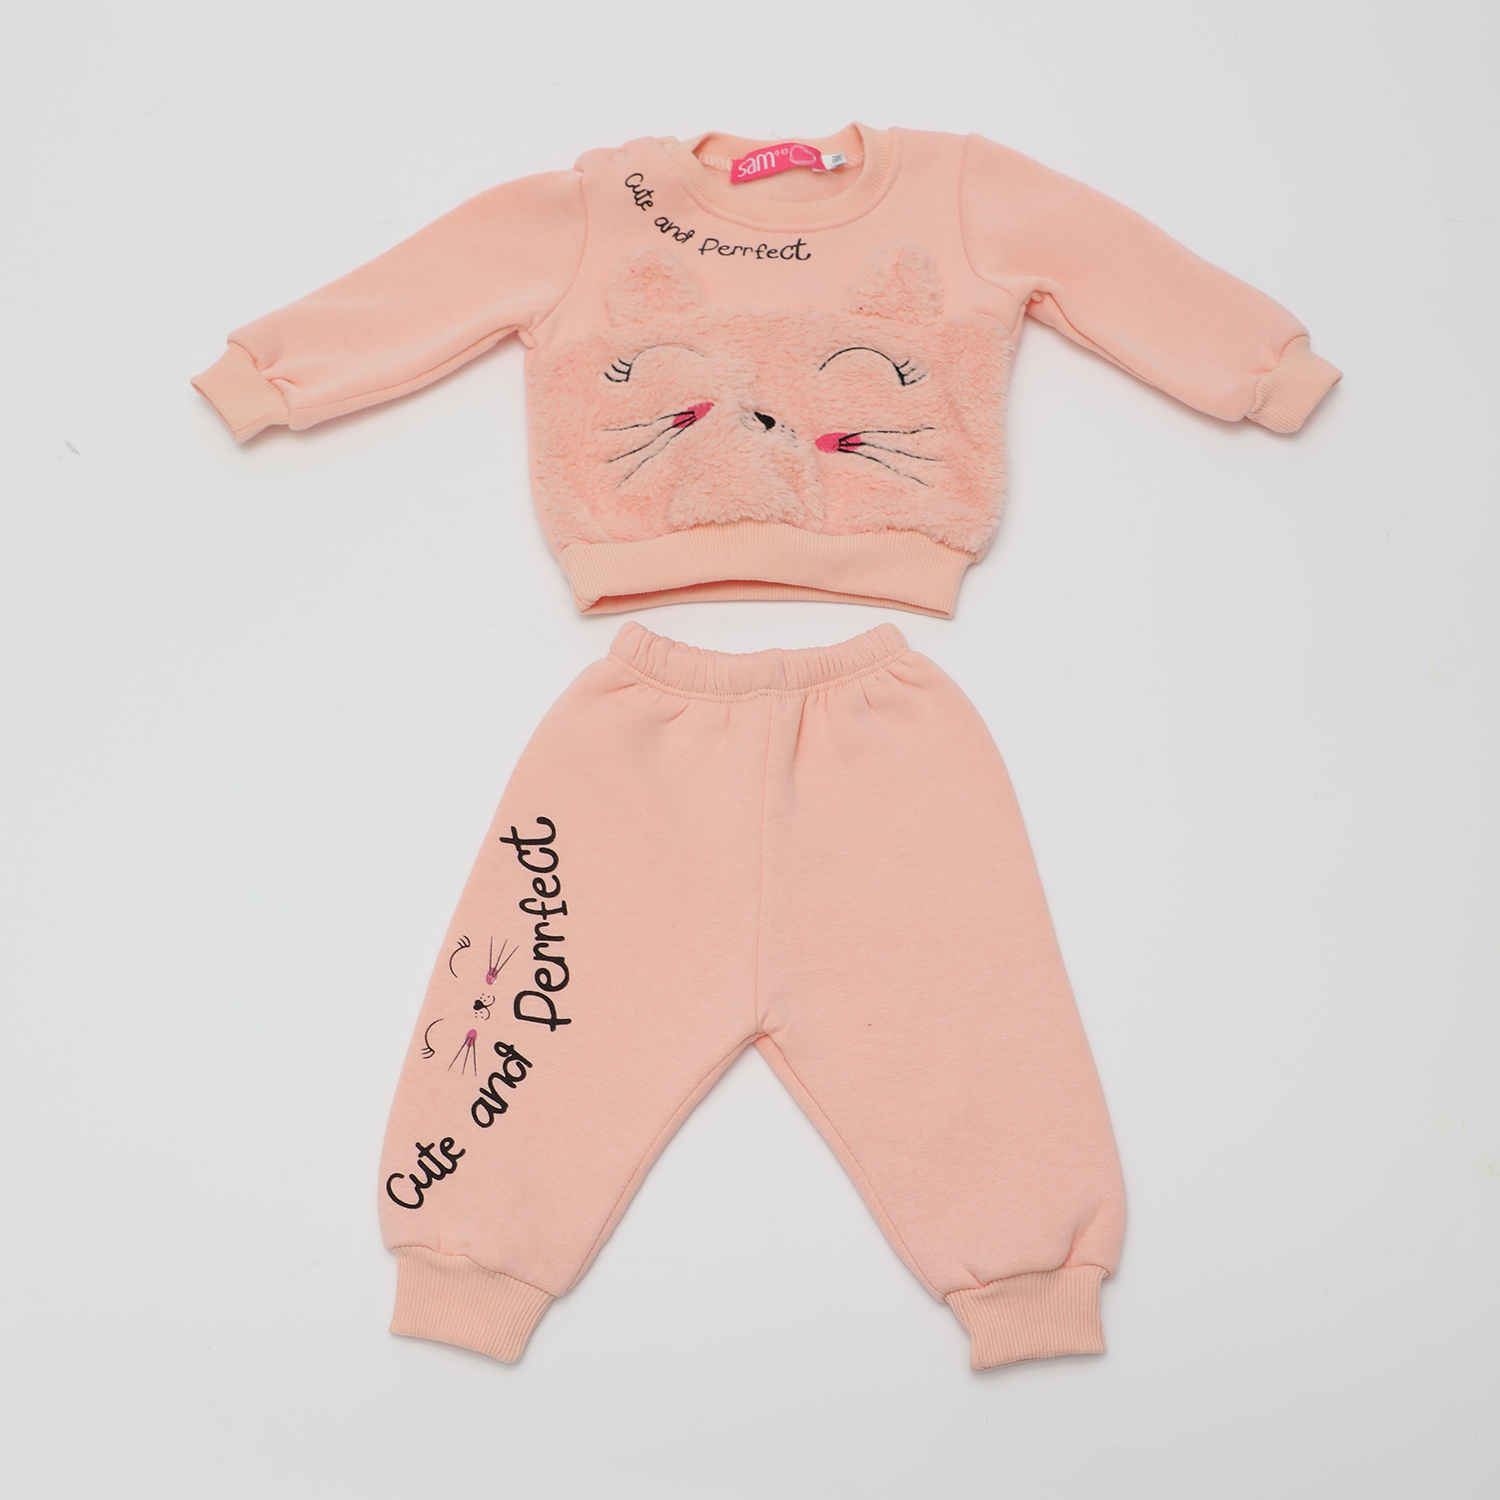 Παιδικά/Baby/Ρούχα/Σετ SAM 0-13 - Βρεφικό σετ φόρμας SAM 0-13 CUTE AND PERFECT σομόν